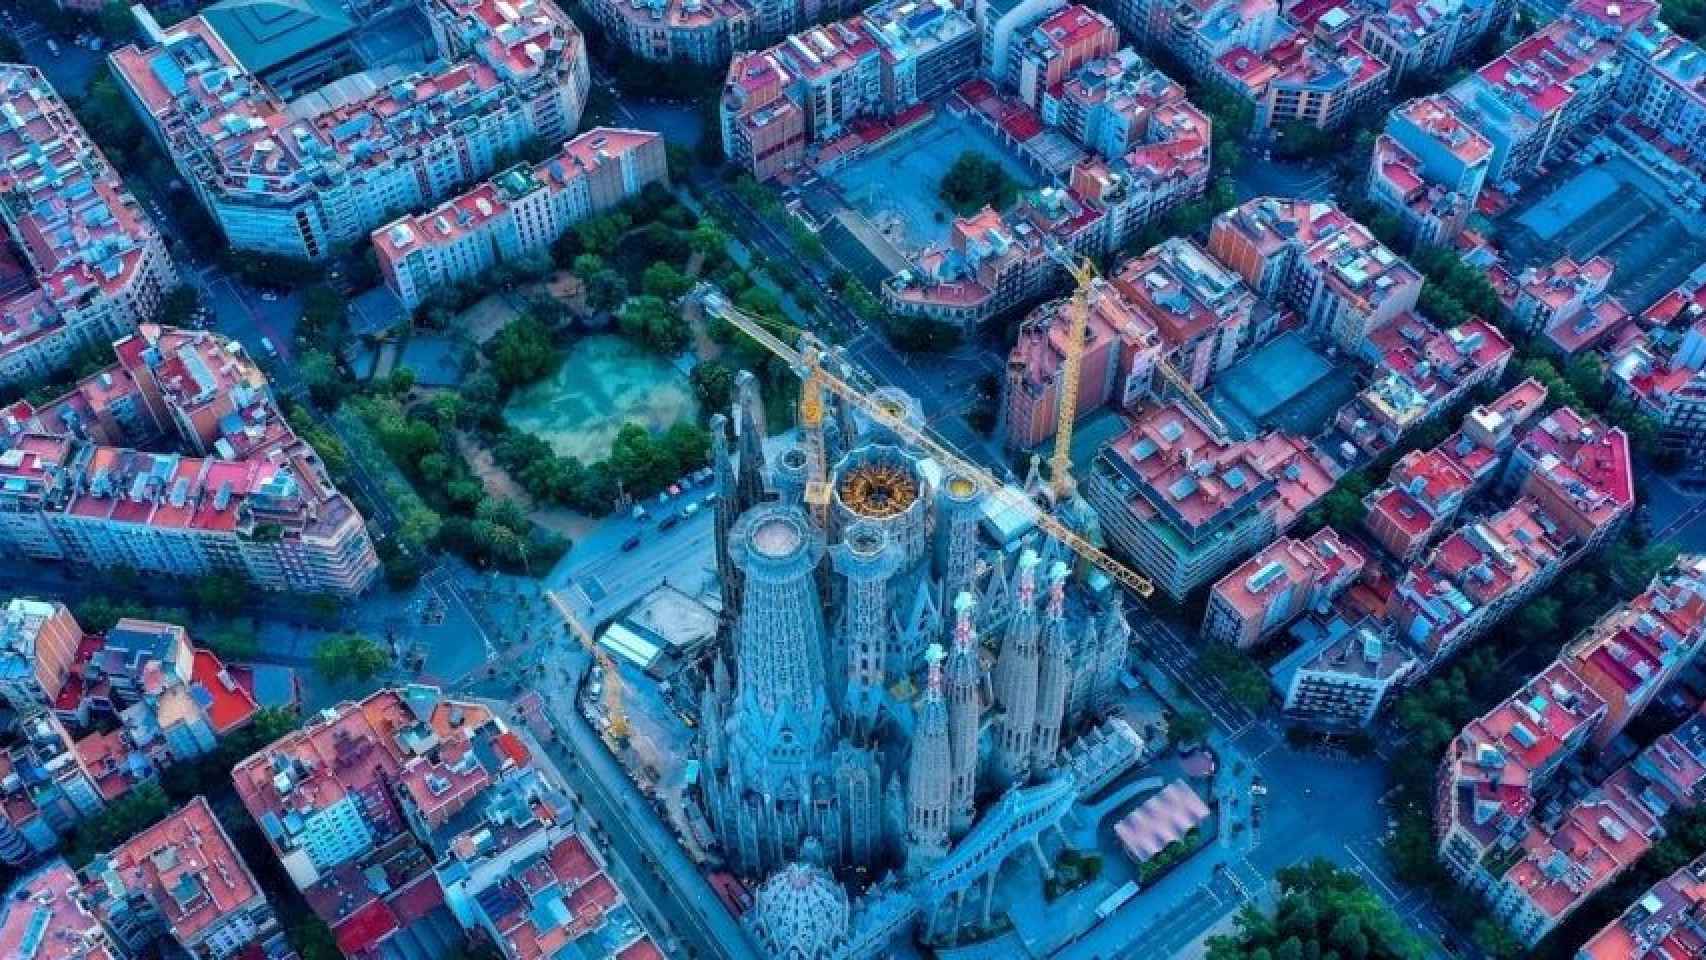 Vista aérea de los alrededores de Sagrada Familia en Barcelona